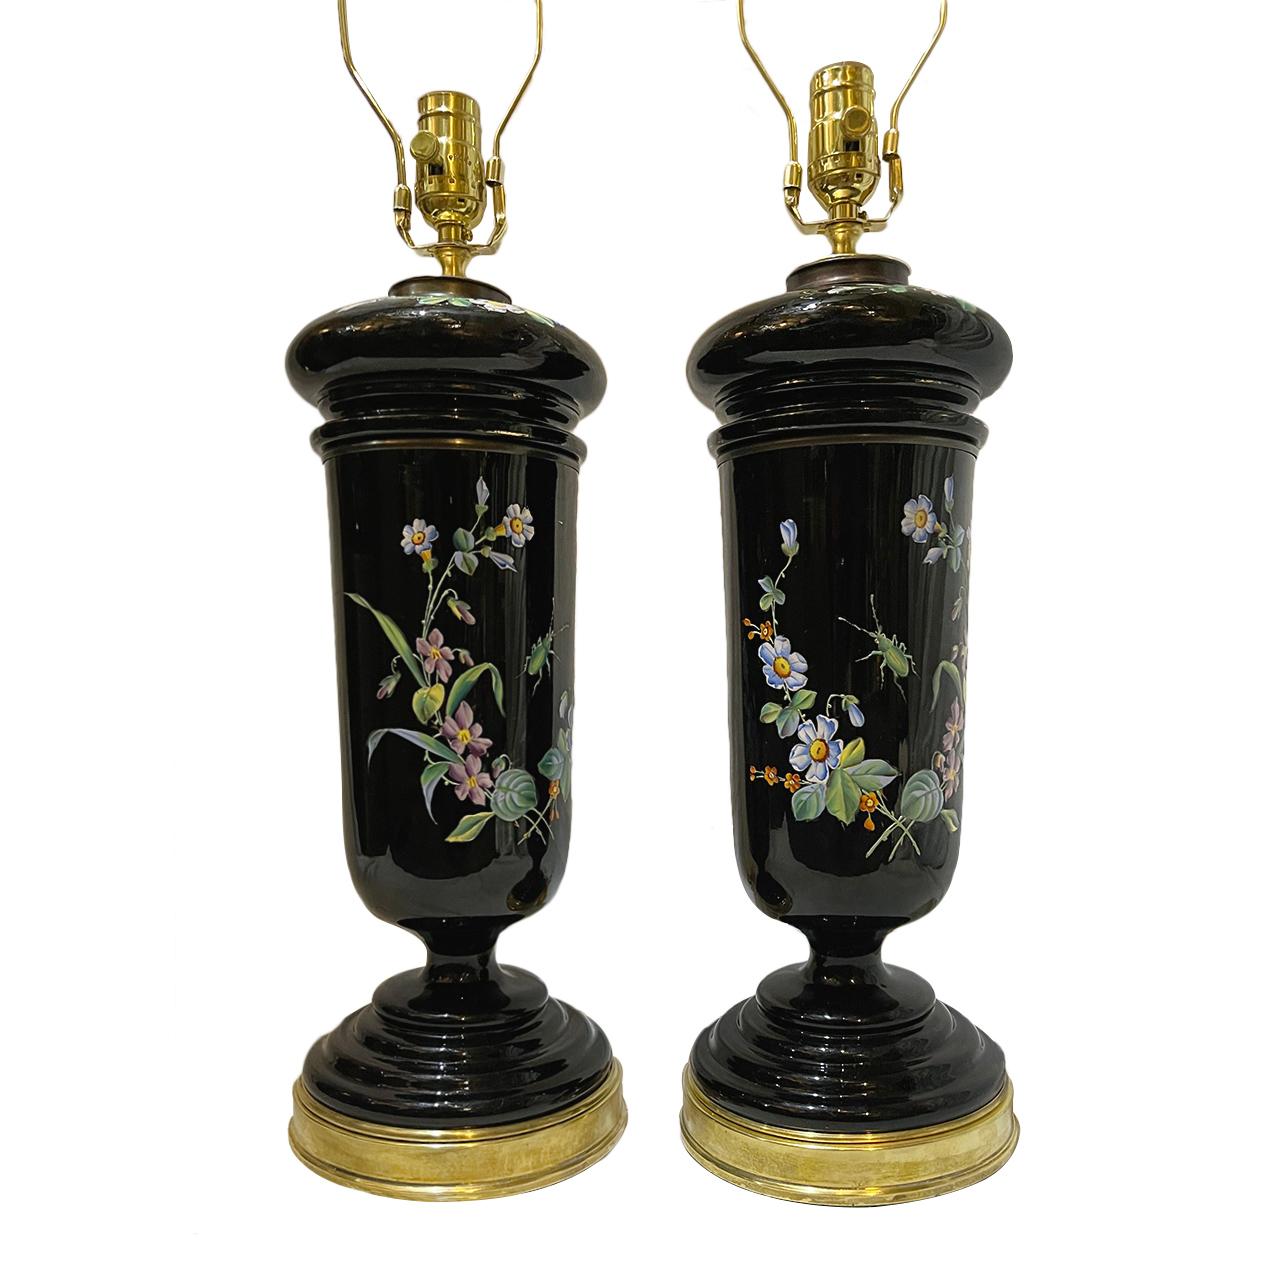 Paire de lampes florales en porcelaine anglaise des années 1920 avec bases dorées.

Mesures :
Hauteur du corps : 17,5